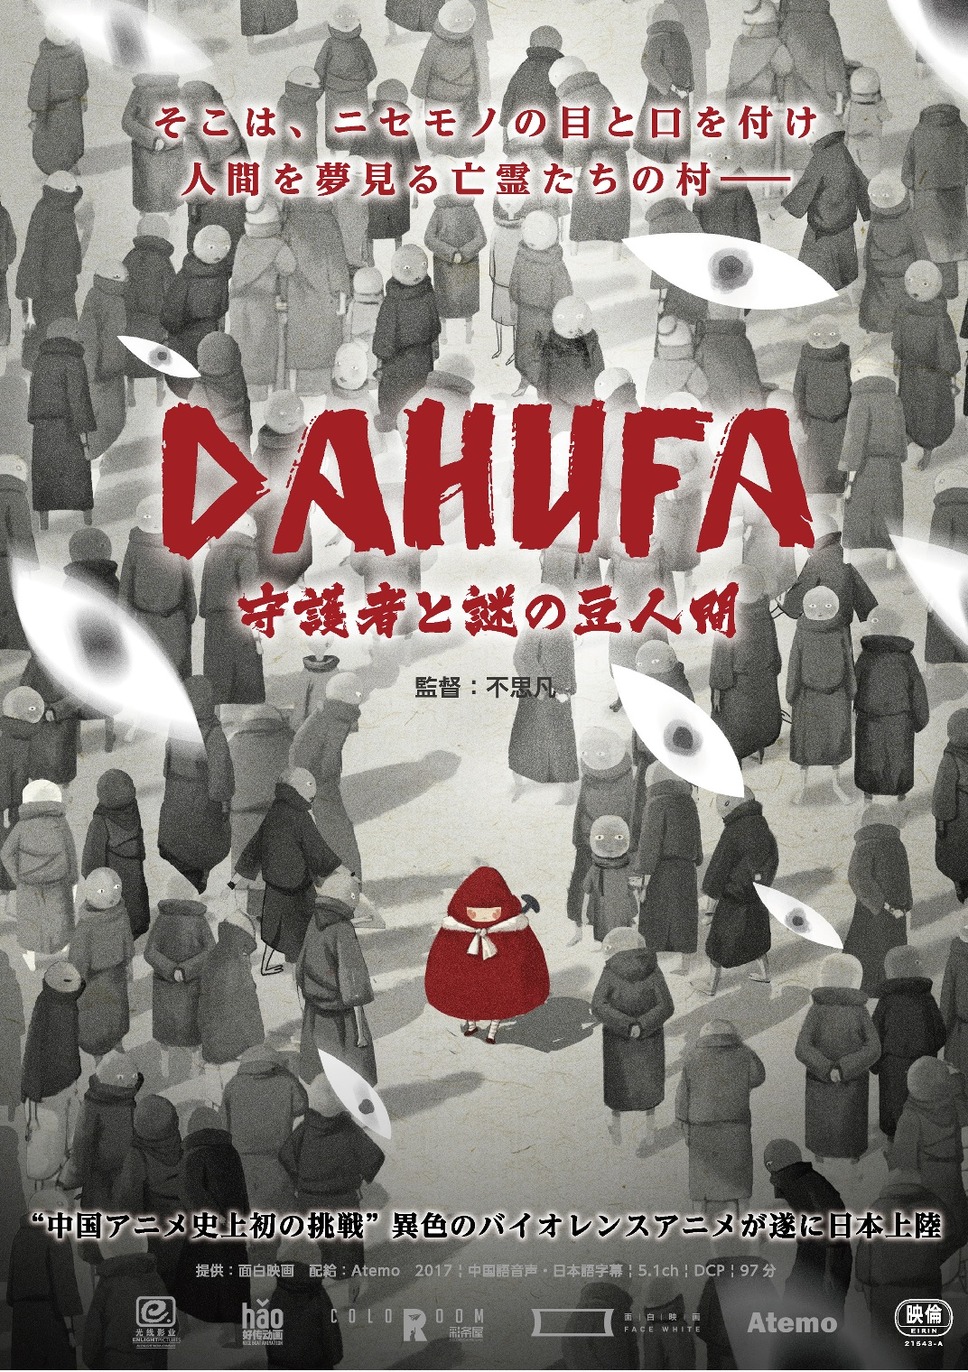 DAHUFA -守護者と謎の豆人間- 1枚目の写真・画像